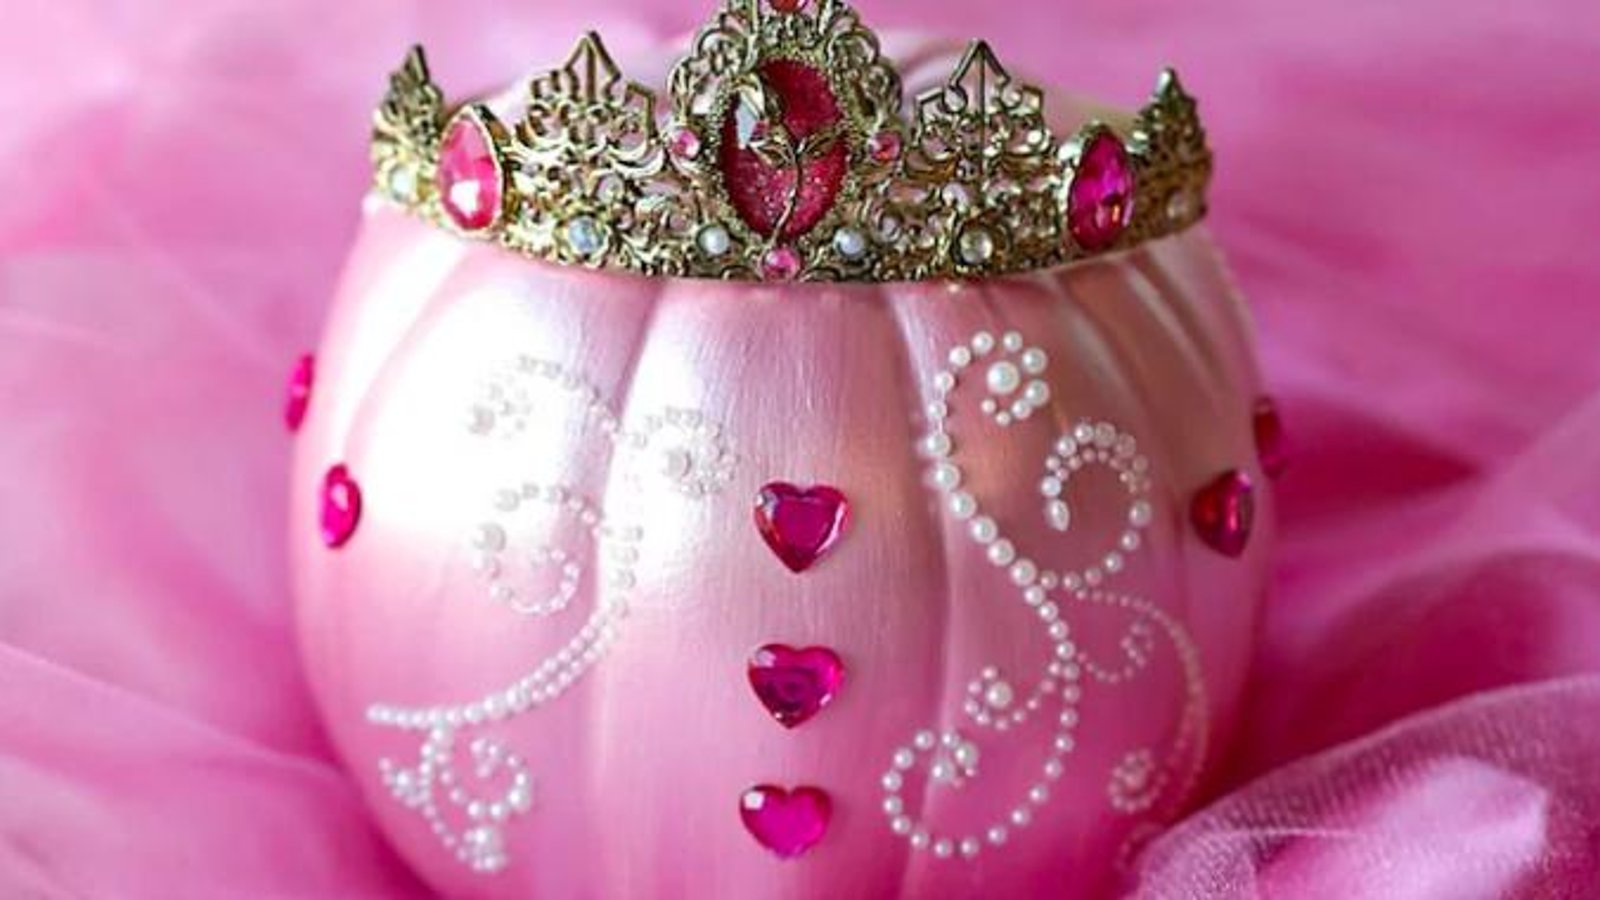 Les citrouilles décorées en princesses sont la tendance de l'heure pour l'Halloween cette année